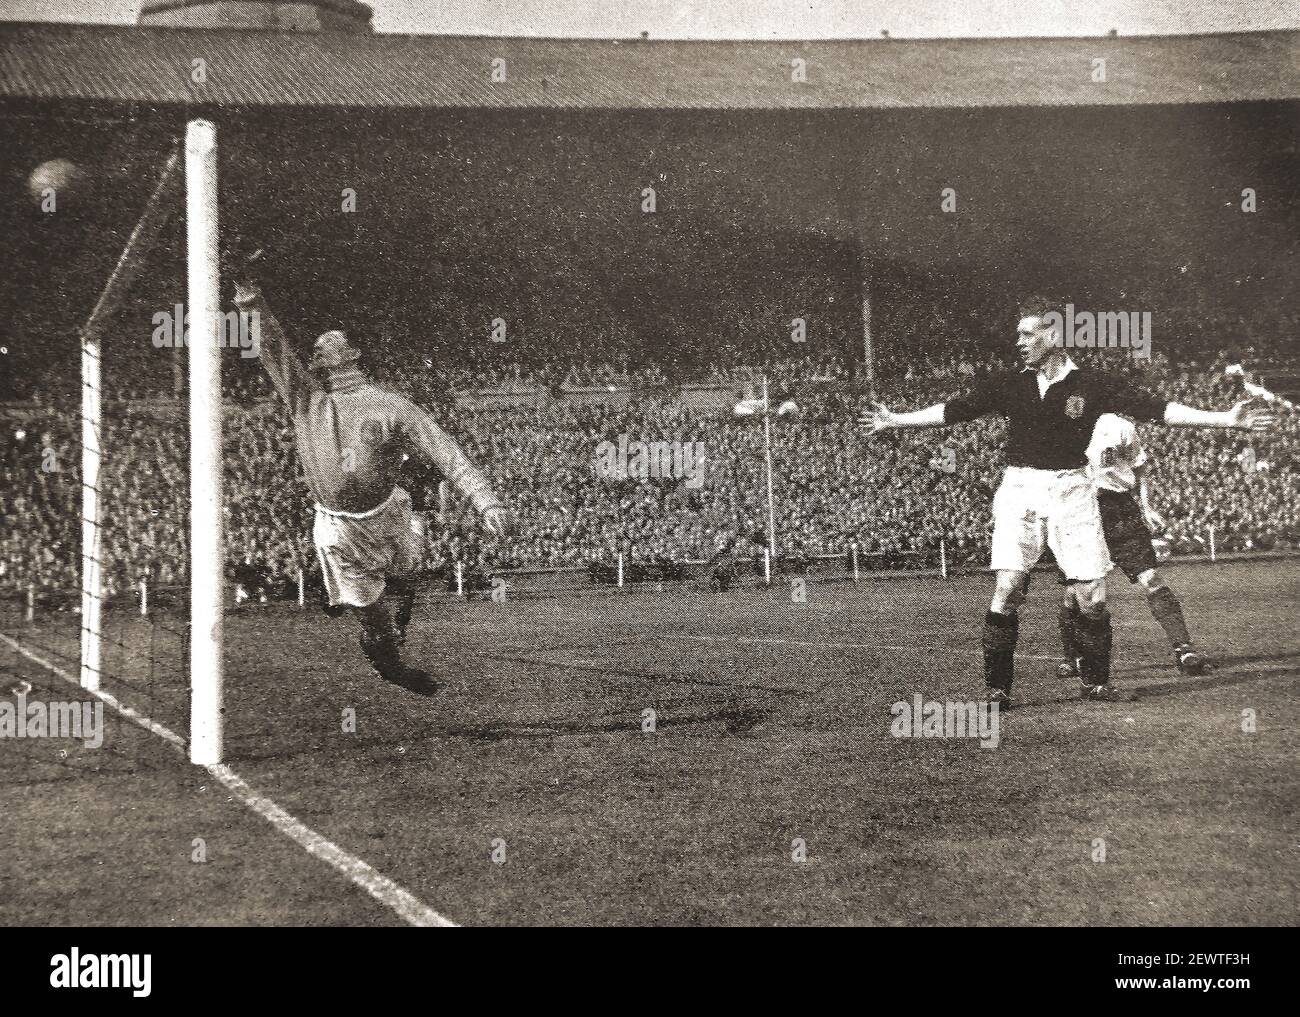 Una vecchia foto da stampa di un gol segnato nella partita di calcio internazionale 1947 tra Inghilterra e Scozia a Webley, in Engand. Foto Stock